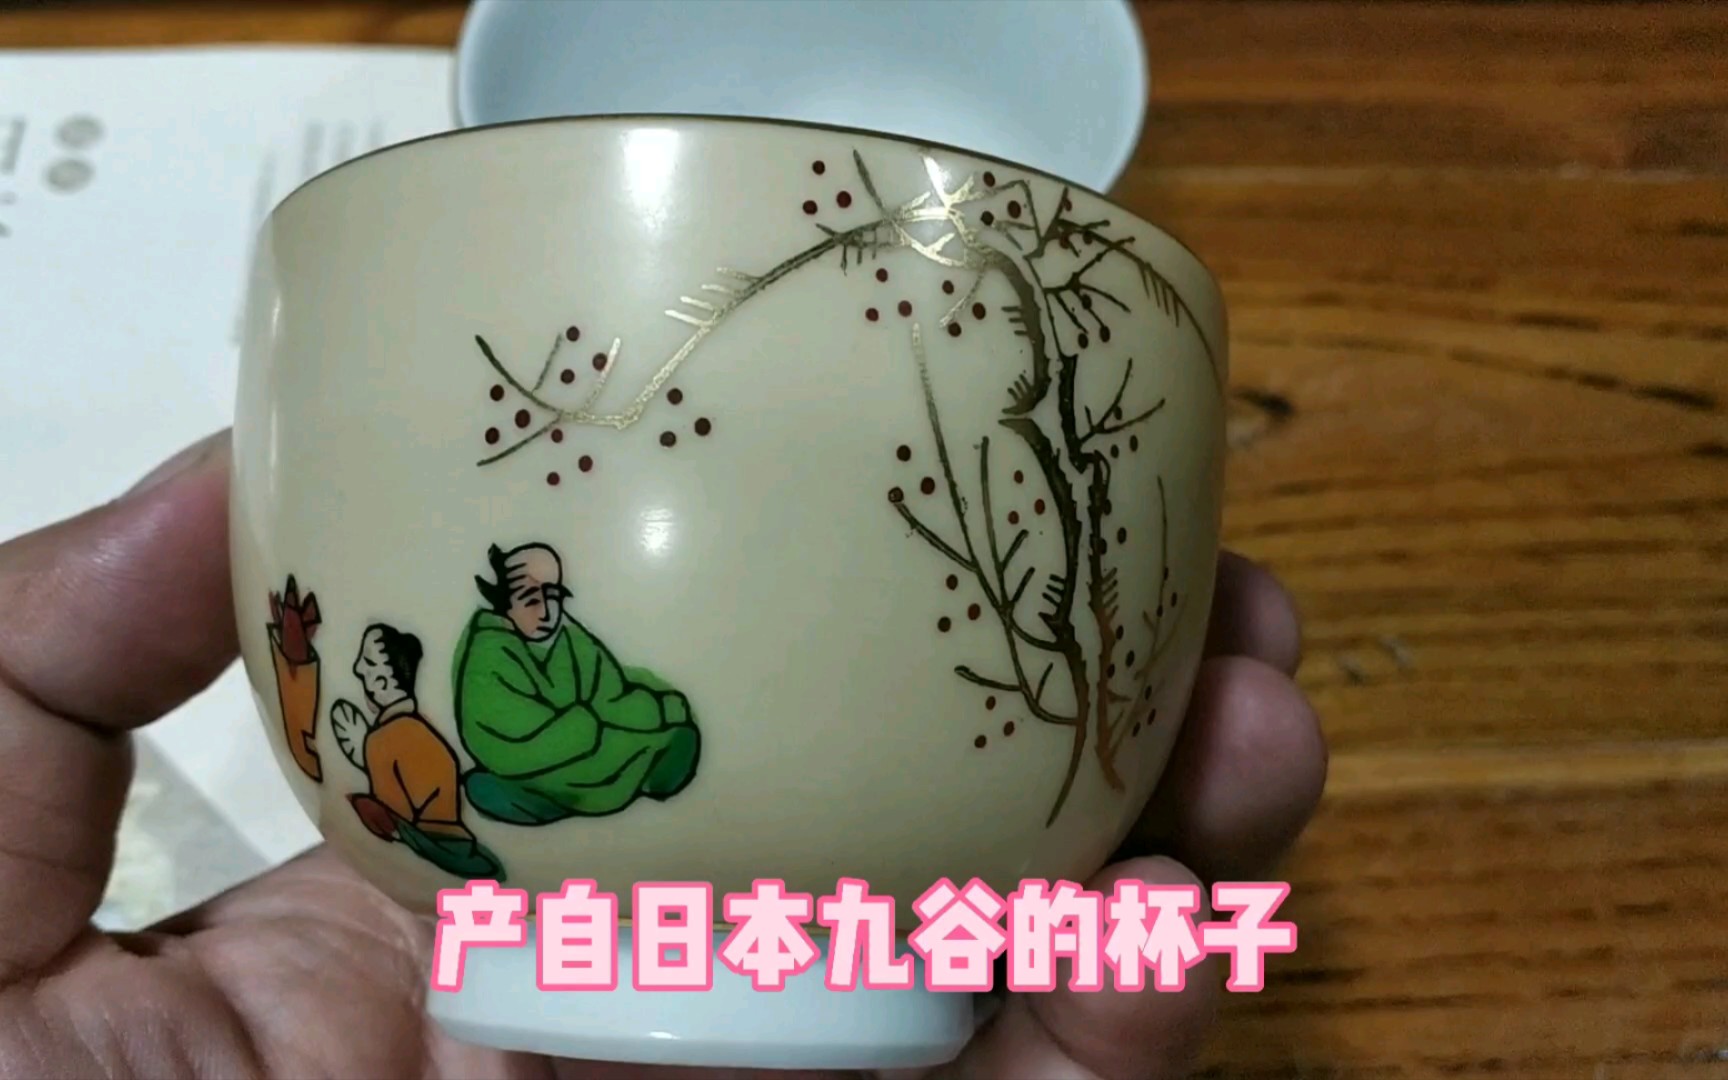 日本現代工芸会員 朝日新聞社賞 受賞者 作品 大皿 茶道 和食 茶道 鉢 